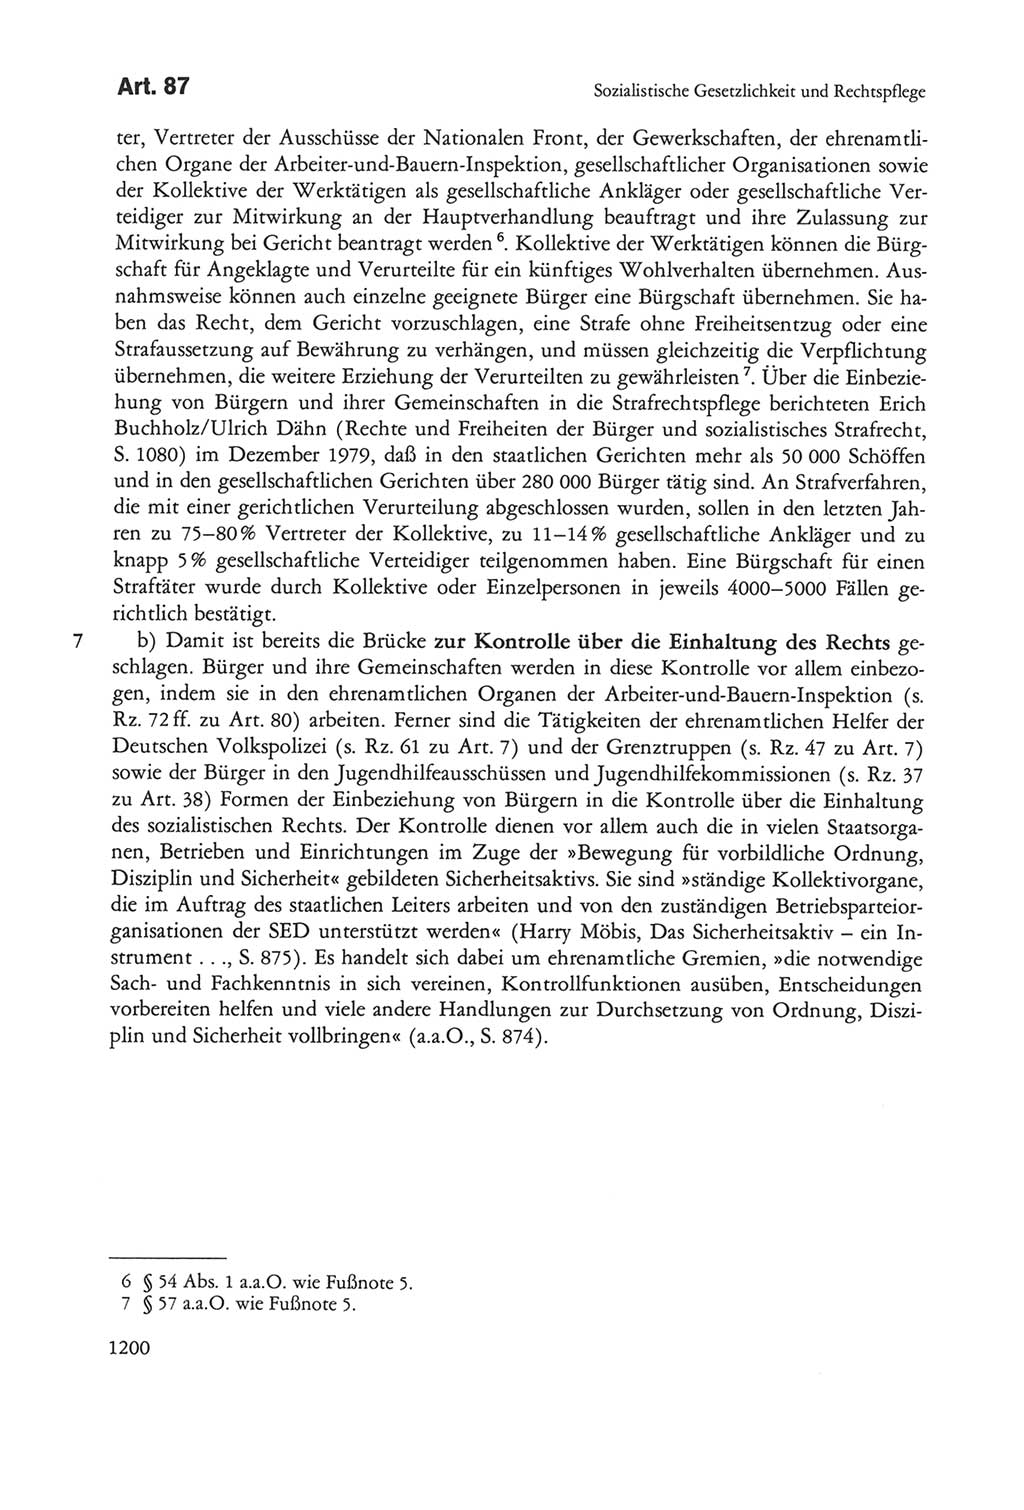 Die sozialistische Verfassung der Deutschen Demokratischen Republik (DDR), Kommentar 1982, Seite 1200 (Soz. Verf. DDR Komm. 1982, S. 1200)